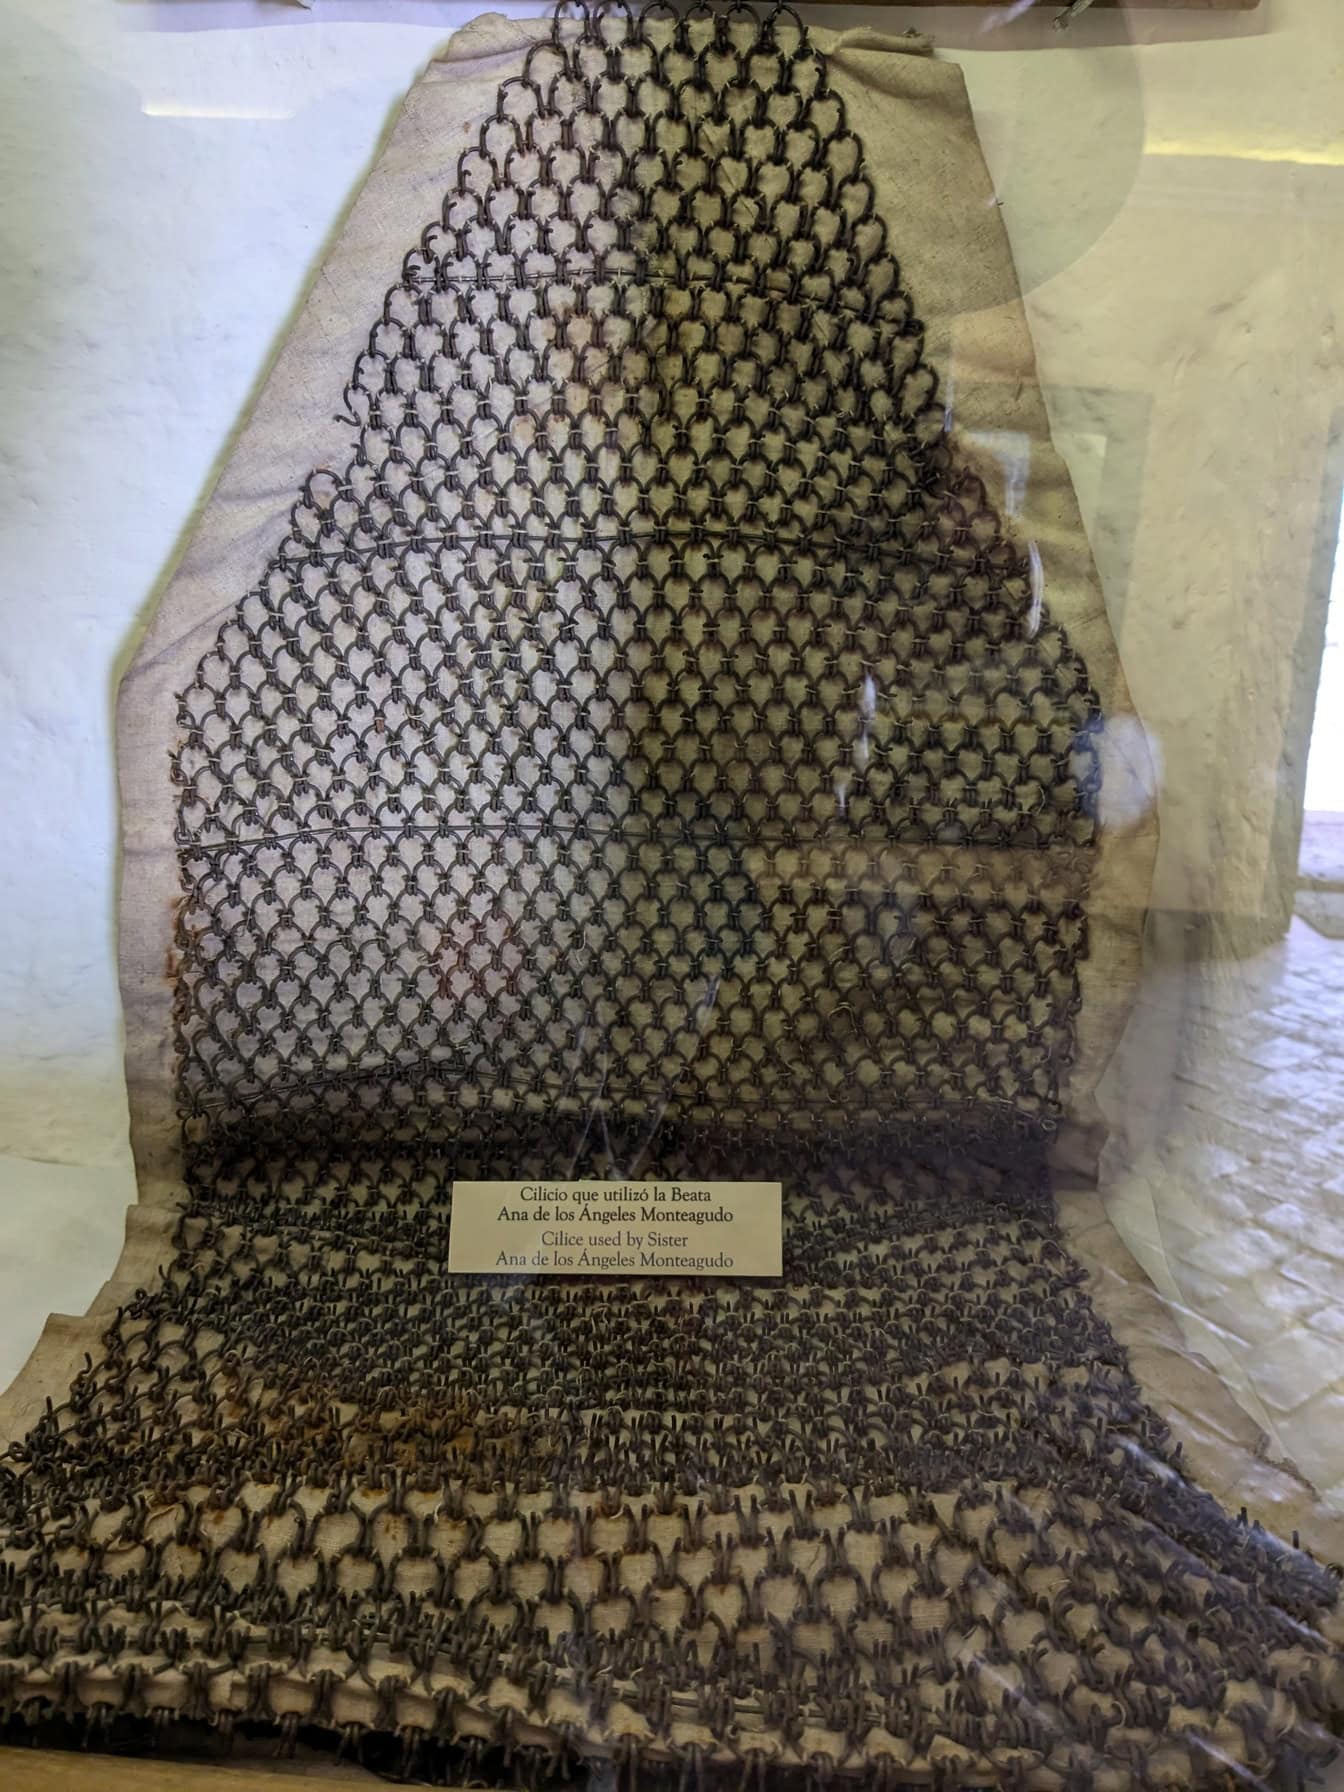 Ketjuista valmistettu vaate, jota sisar Ana de los Angelos Monteagudo käytti, esillä museossa Perussa